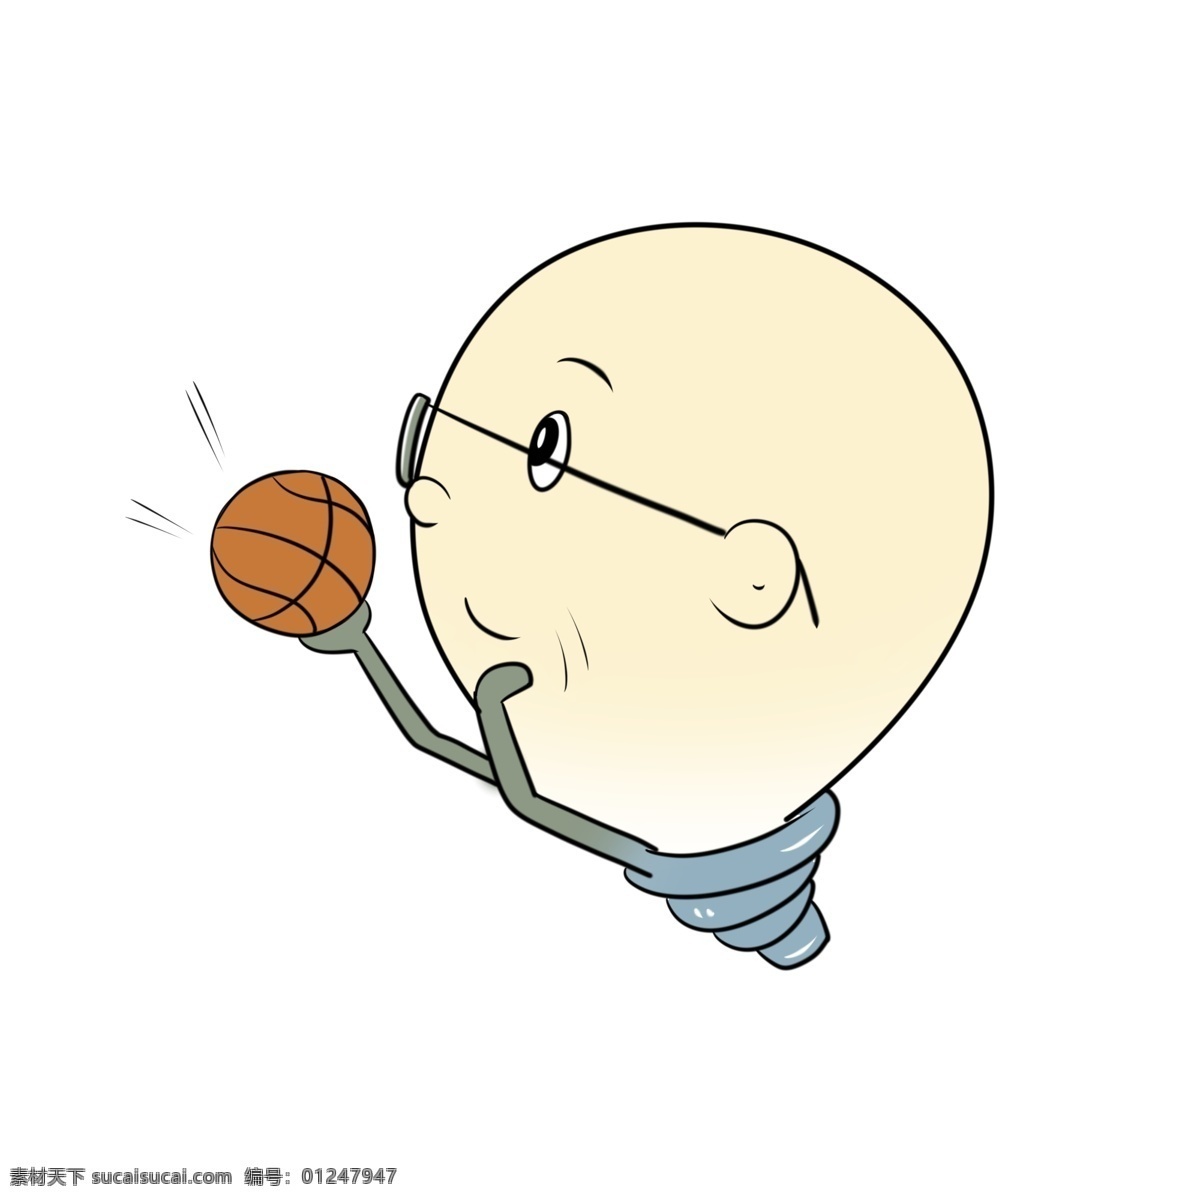 篮球 体育运动 插图 体育 卡通人物 打篮球运动 篮球插图 篮球运动 戴眼镜的人